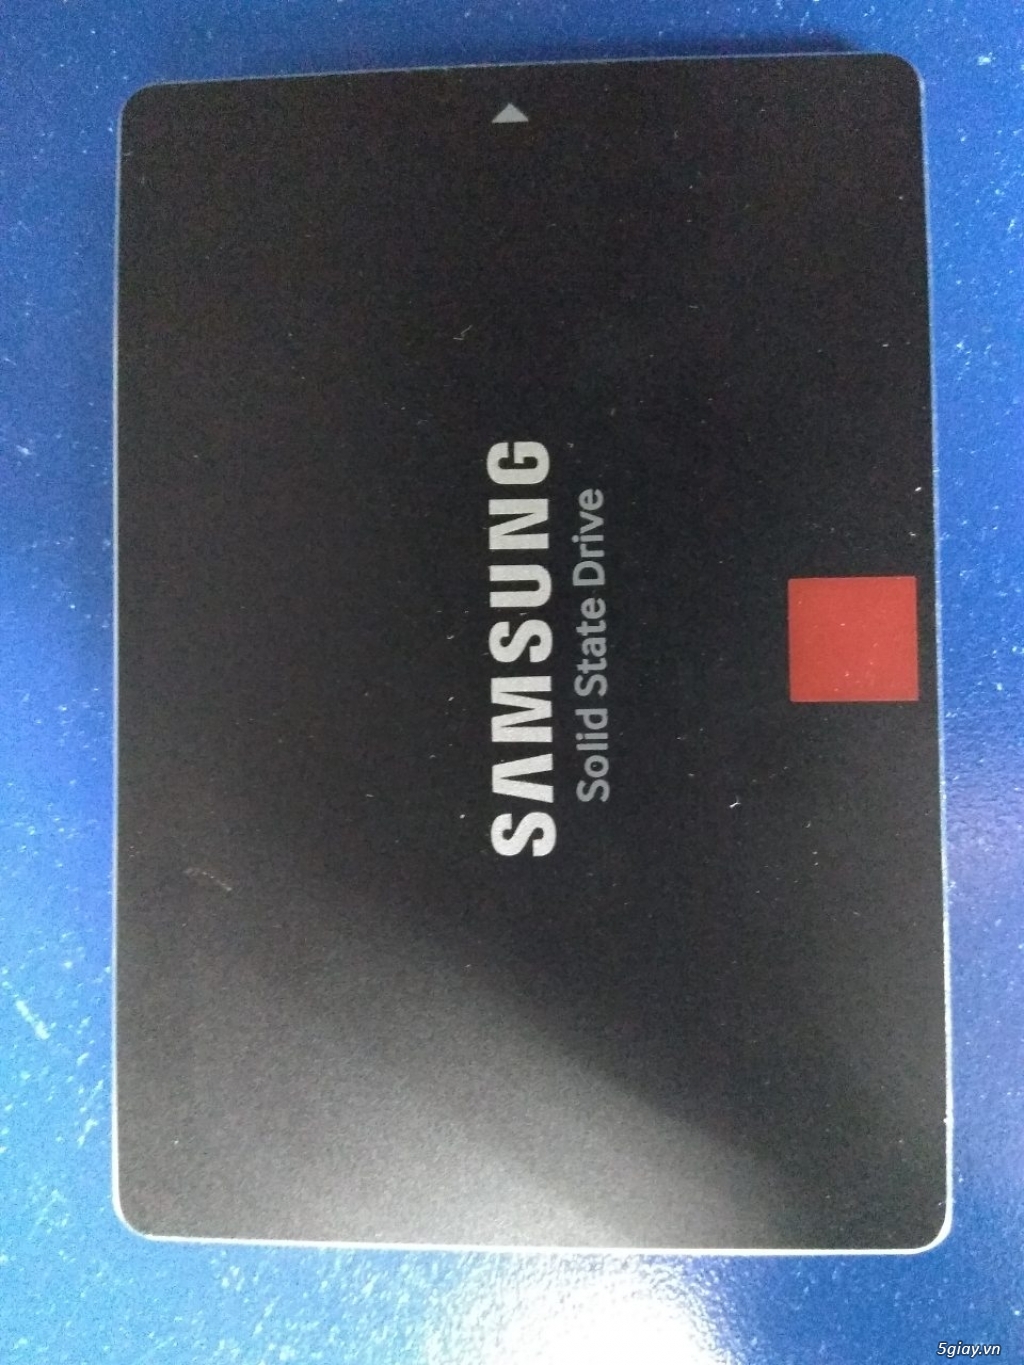 Bán ổ SSD Samsung 850 pro, 860 evo. Ram ddr3 4G 8G - 4